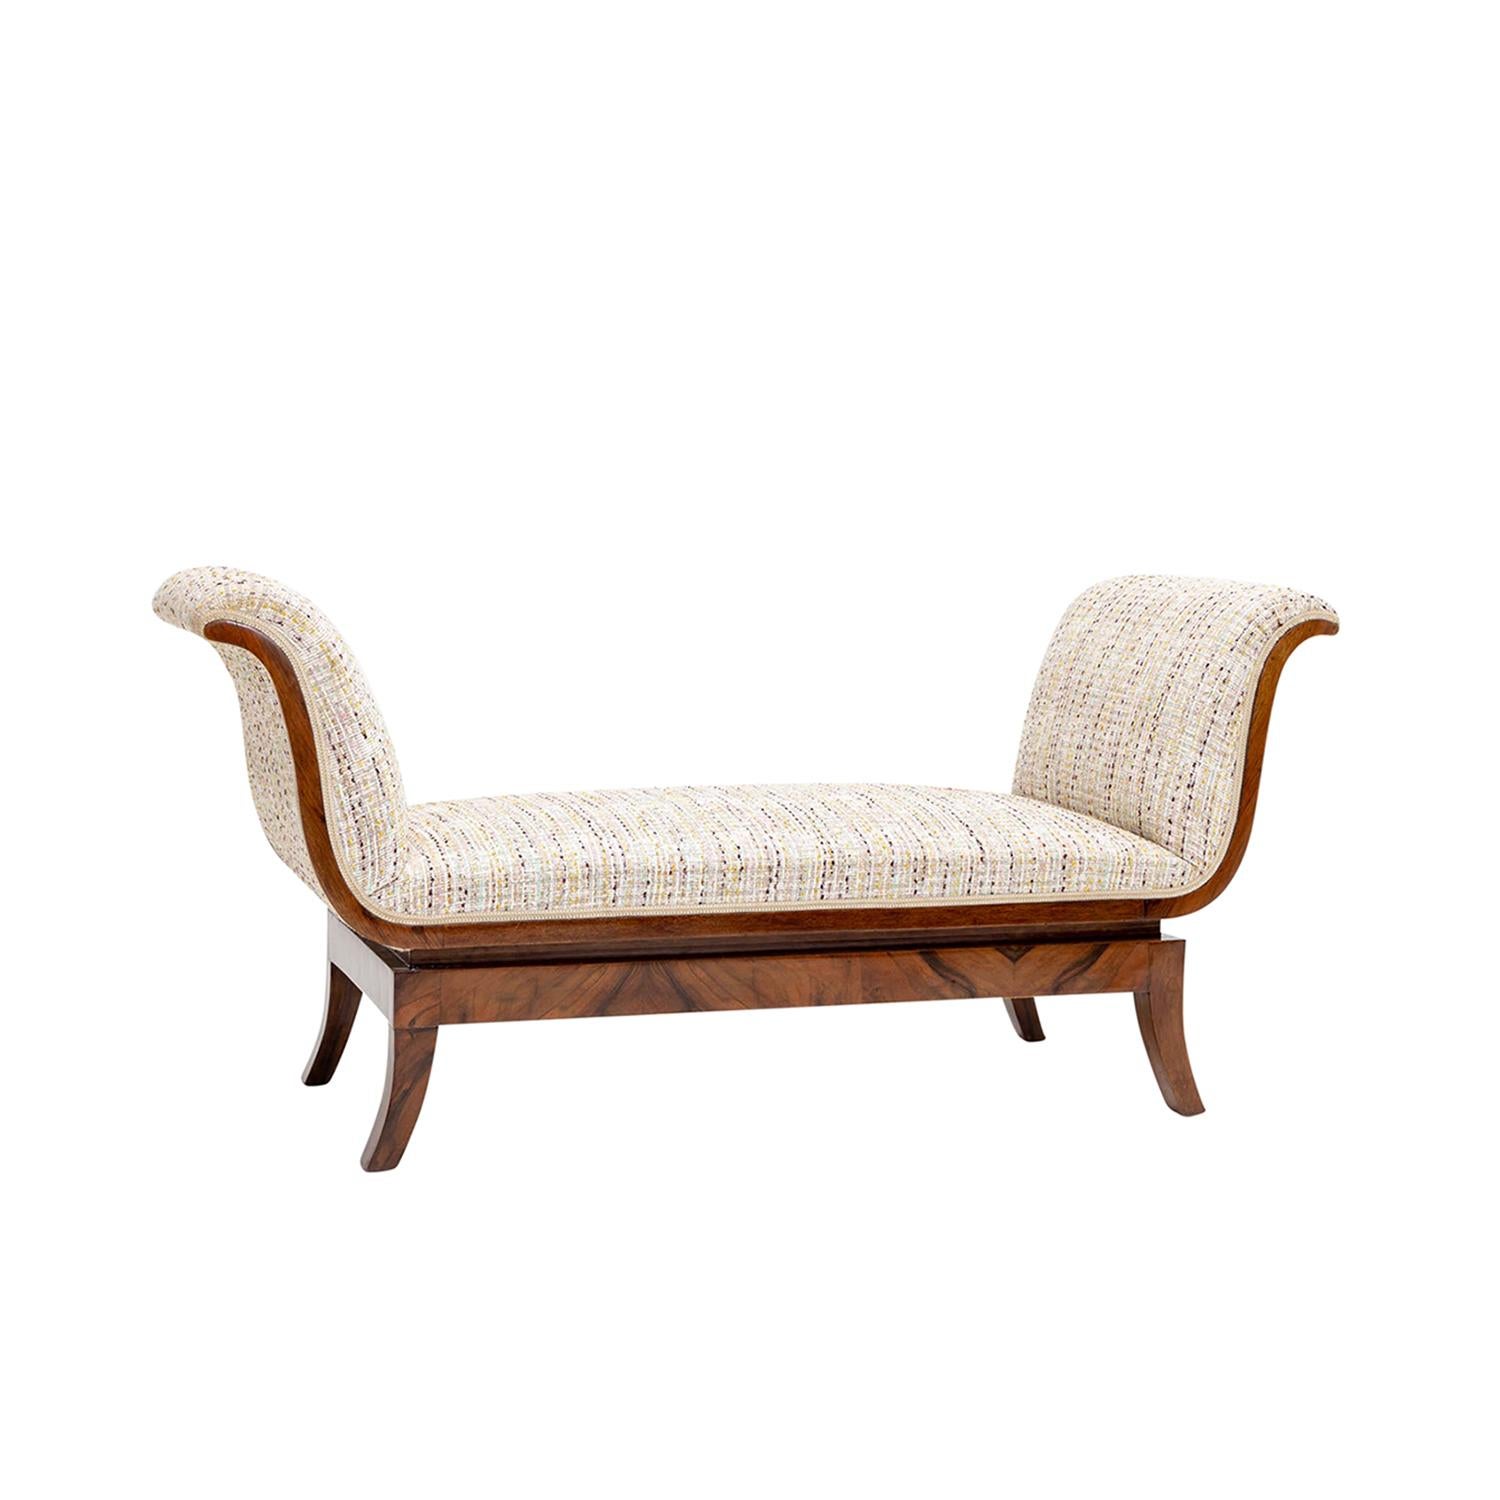 Eine kleine italienische Sofabank im Art Deco-Stil aus handgefertigtem, schellackpoliertem, teilweise furniertem Nussbaum in gutem Zustand. Das Canapé zeichnet sich durch zwei seitliche Rückenlehnen aus, die auf vier gebogenen Holzfüßen stehen. Neu